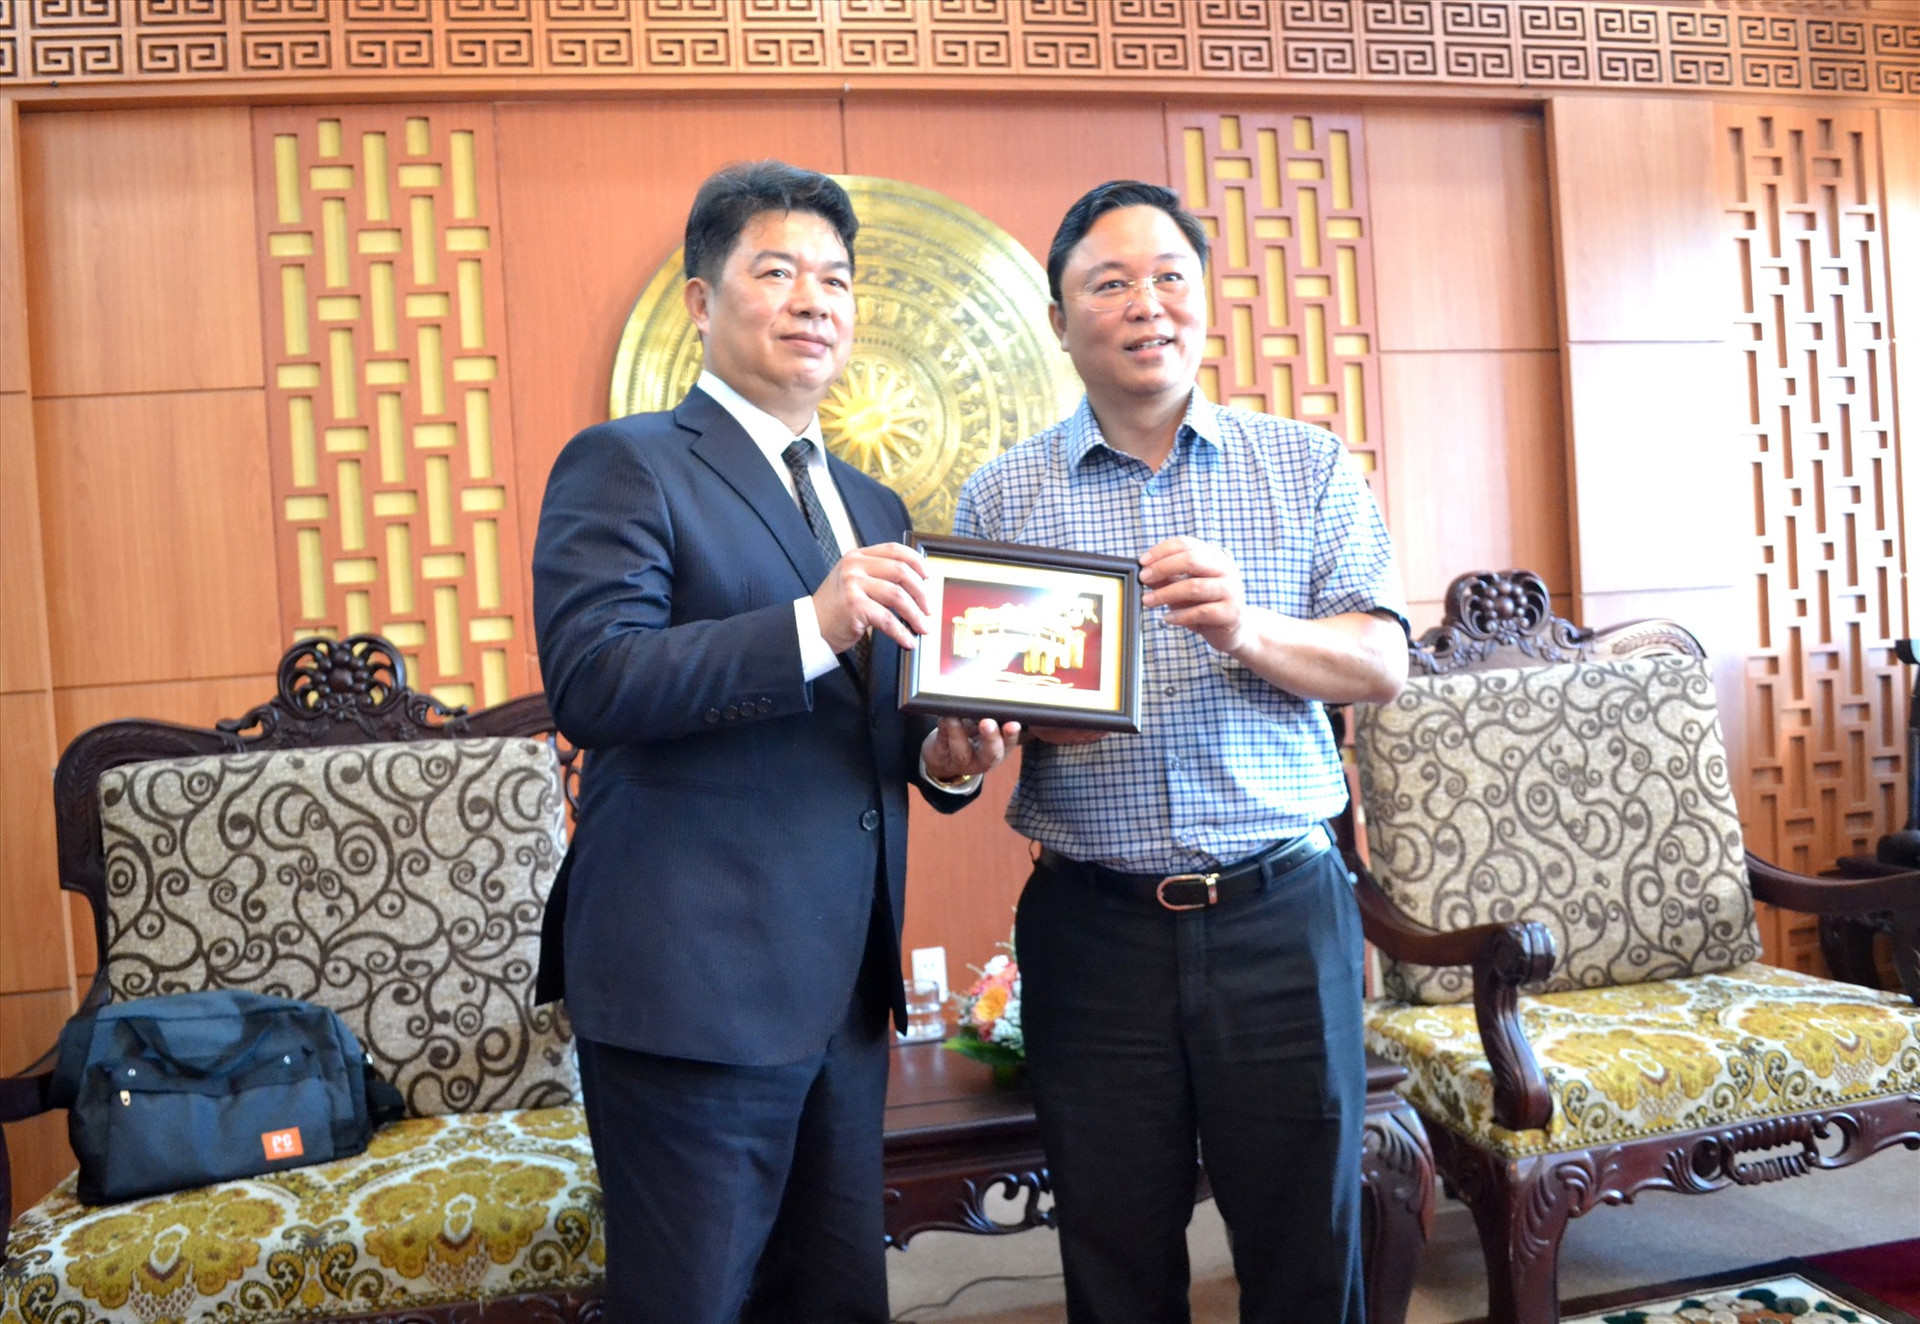 Chủ tịch UBND tỉnh Lê Trí Thanh tặng ông Han Kuo Yao quà đối ngoại là tranh Chùa Cầu 3D mạ vàng. Ảnh: Q.VIỆT